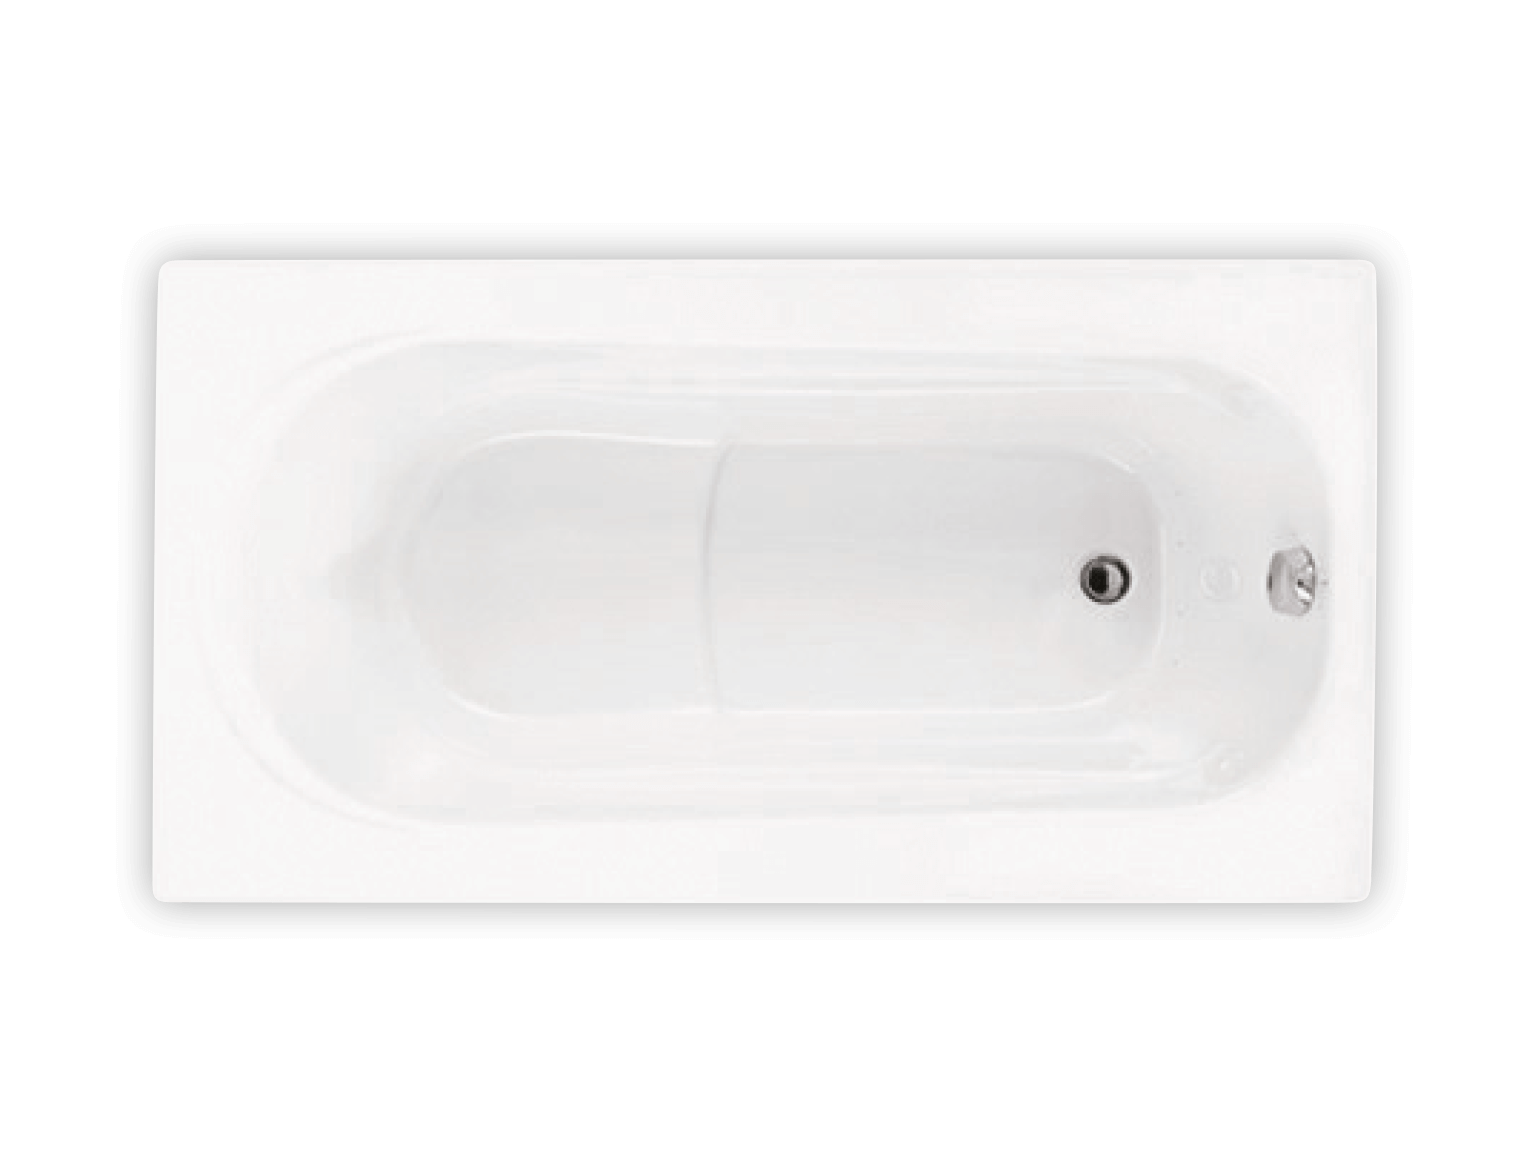 Bainultra Amma® 6032 alcove drop-in air jet bathtub for your modern bathroom